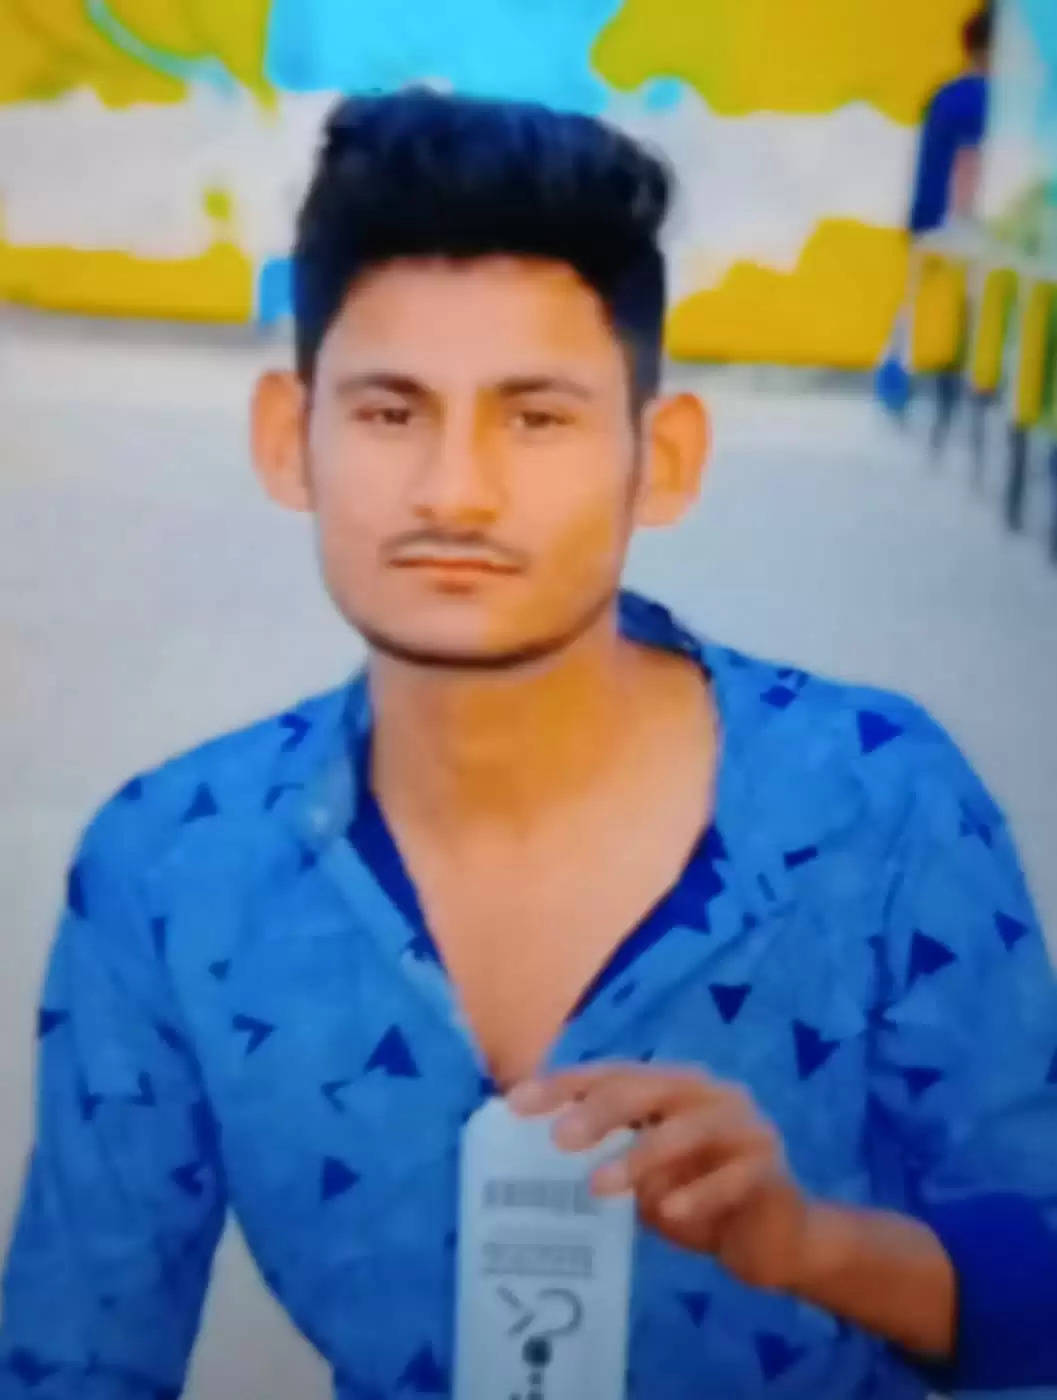 Pratapgarh- बेखौफ बदमाशों ने की युवक की गोली मारकर हत्या, पुलिस मामले की जांच में जुटी